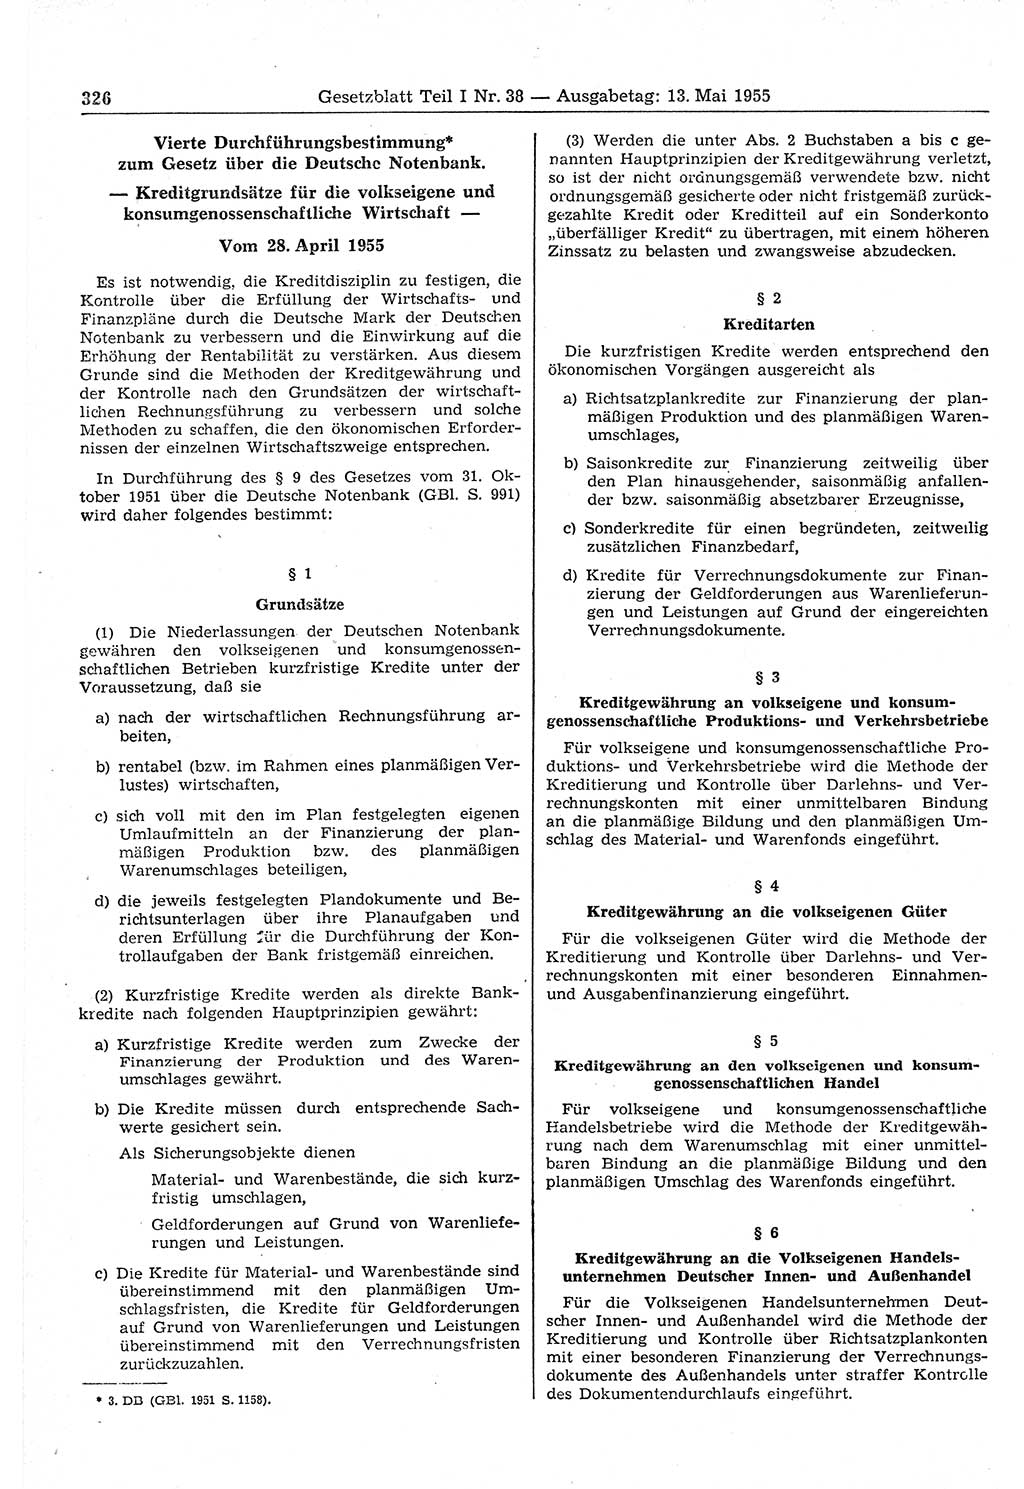 Gesetzblatt (GBl.) der Deutschen Demokratischen Republik (DDR) Teil Ⅰ 1955, Seite 326 (GBl. DDR Ⅰ 1955, S. 326)